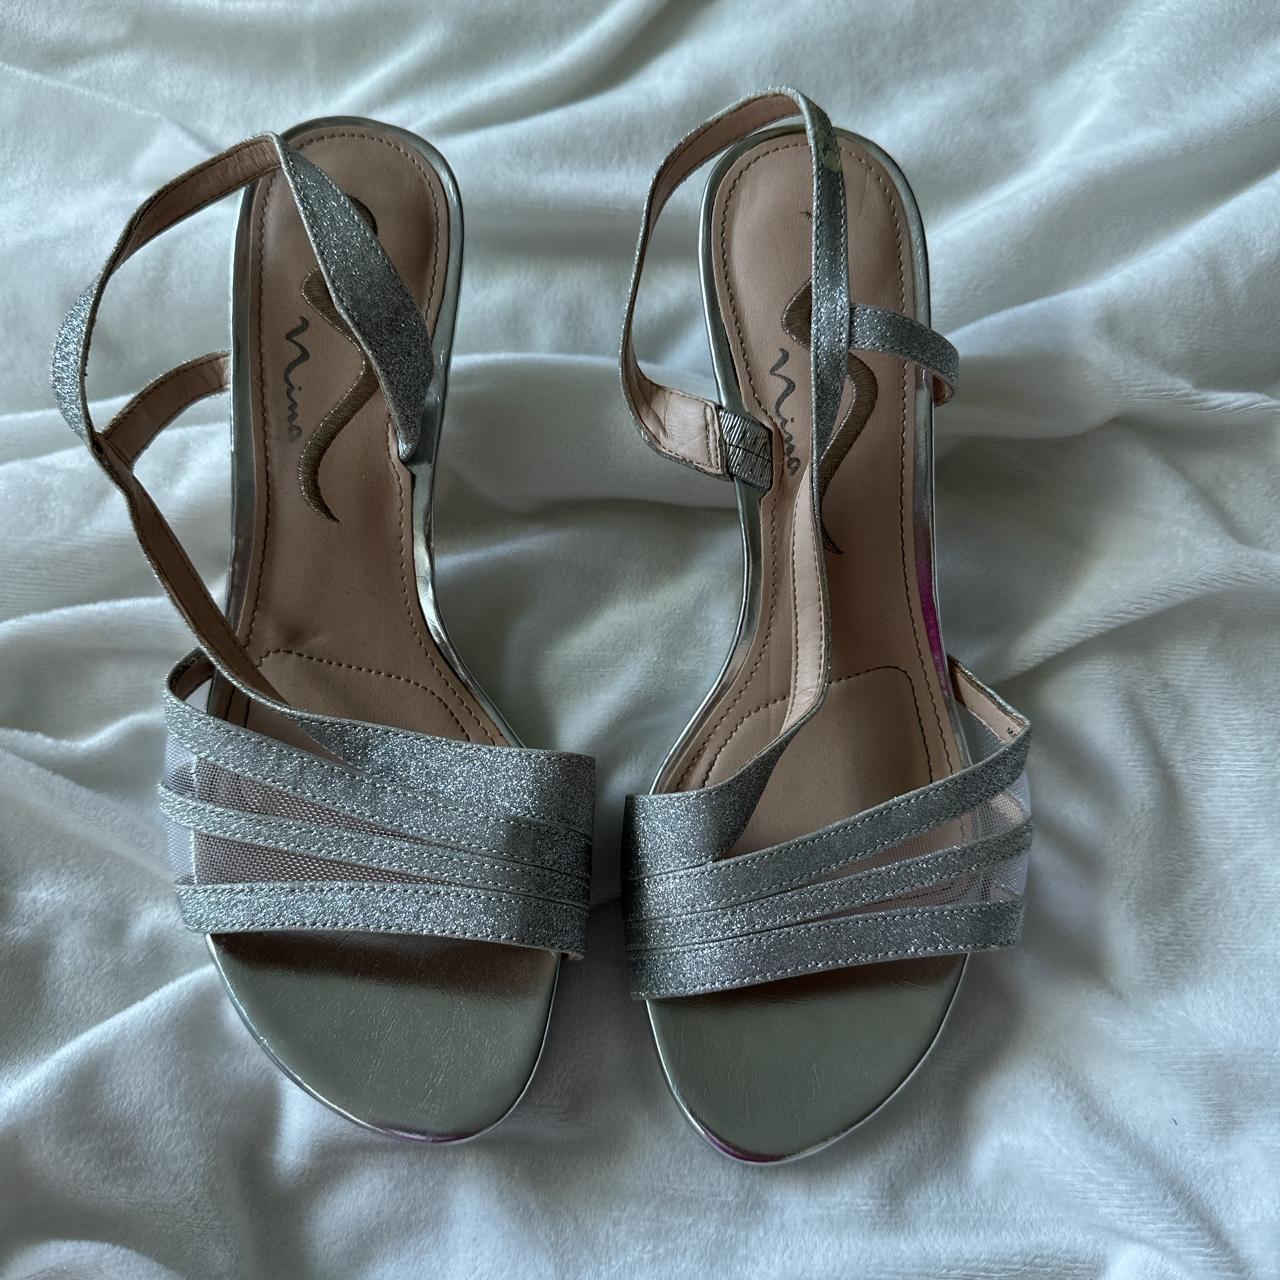 Shimmer heels - Depop